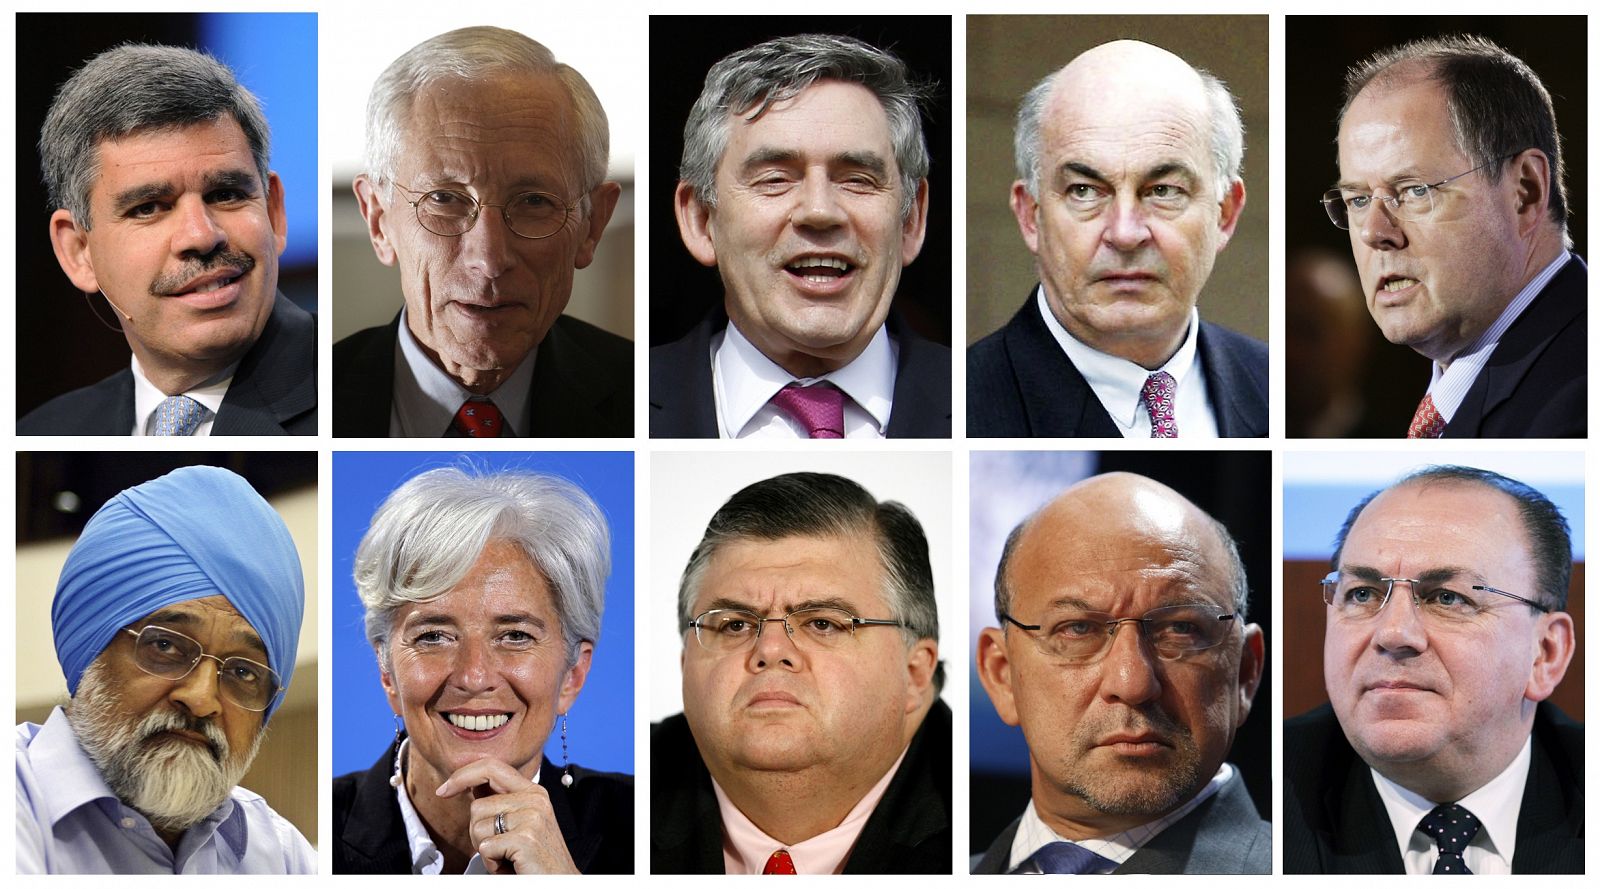 Los posibles sucesores a Strauss-Kahn: en la fila de arriba de izquierda a derecha Mohamed El-Erian, Stanley Fischer de Israel, el exprimer ministro británico Gordon Brown, Kemal Dervis de Turquía, Peer Steinbrueck de Alemania